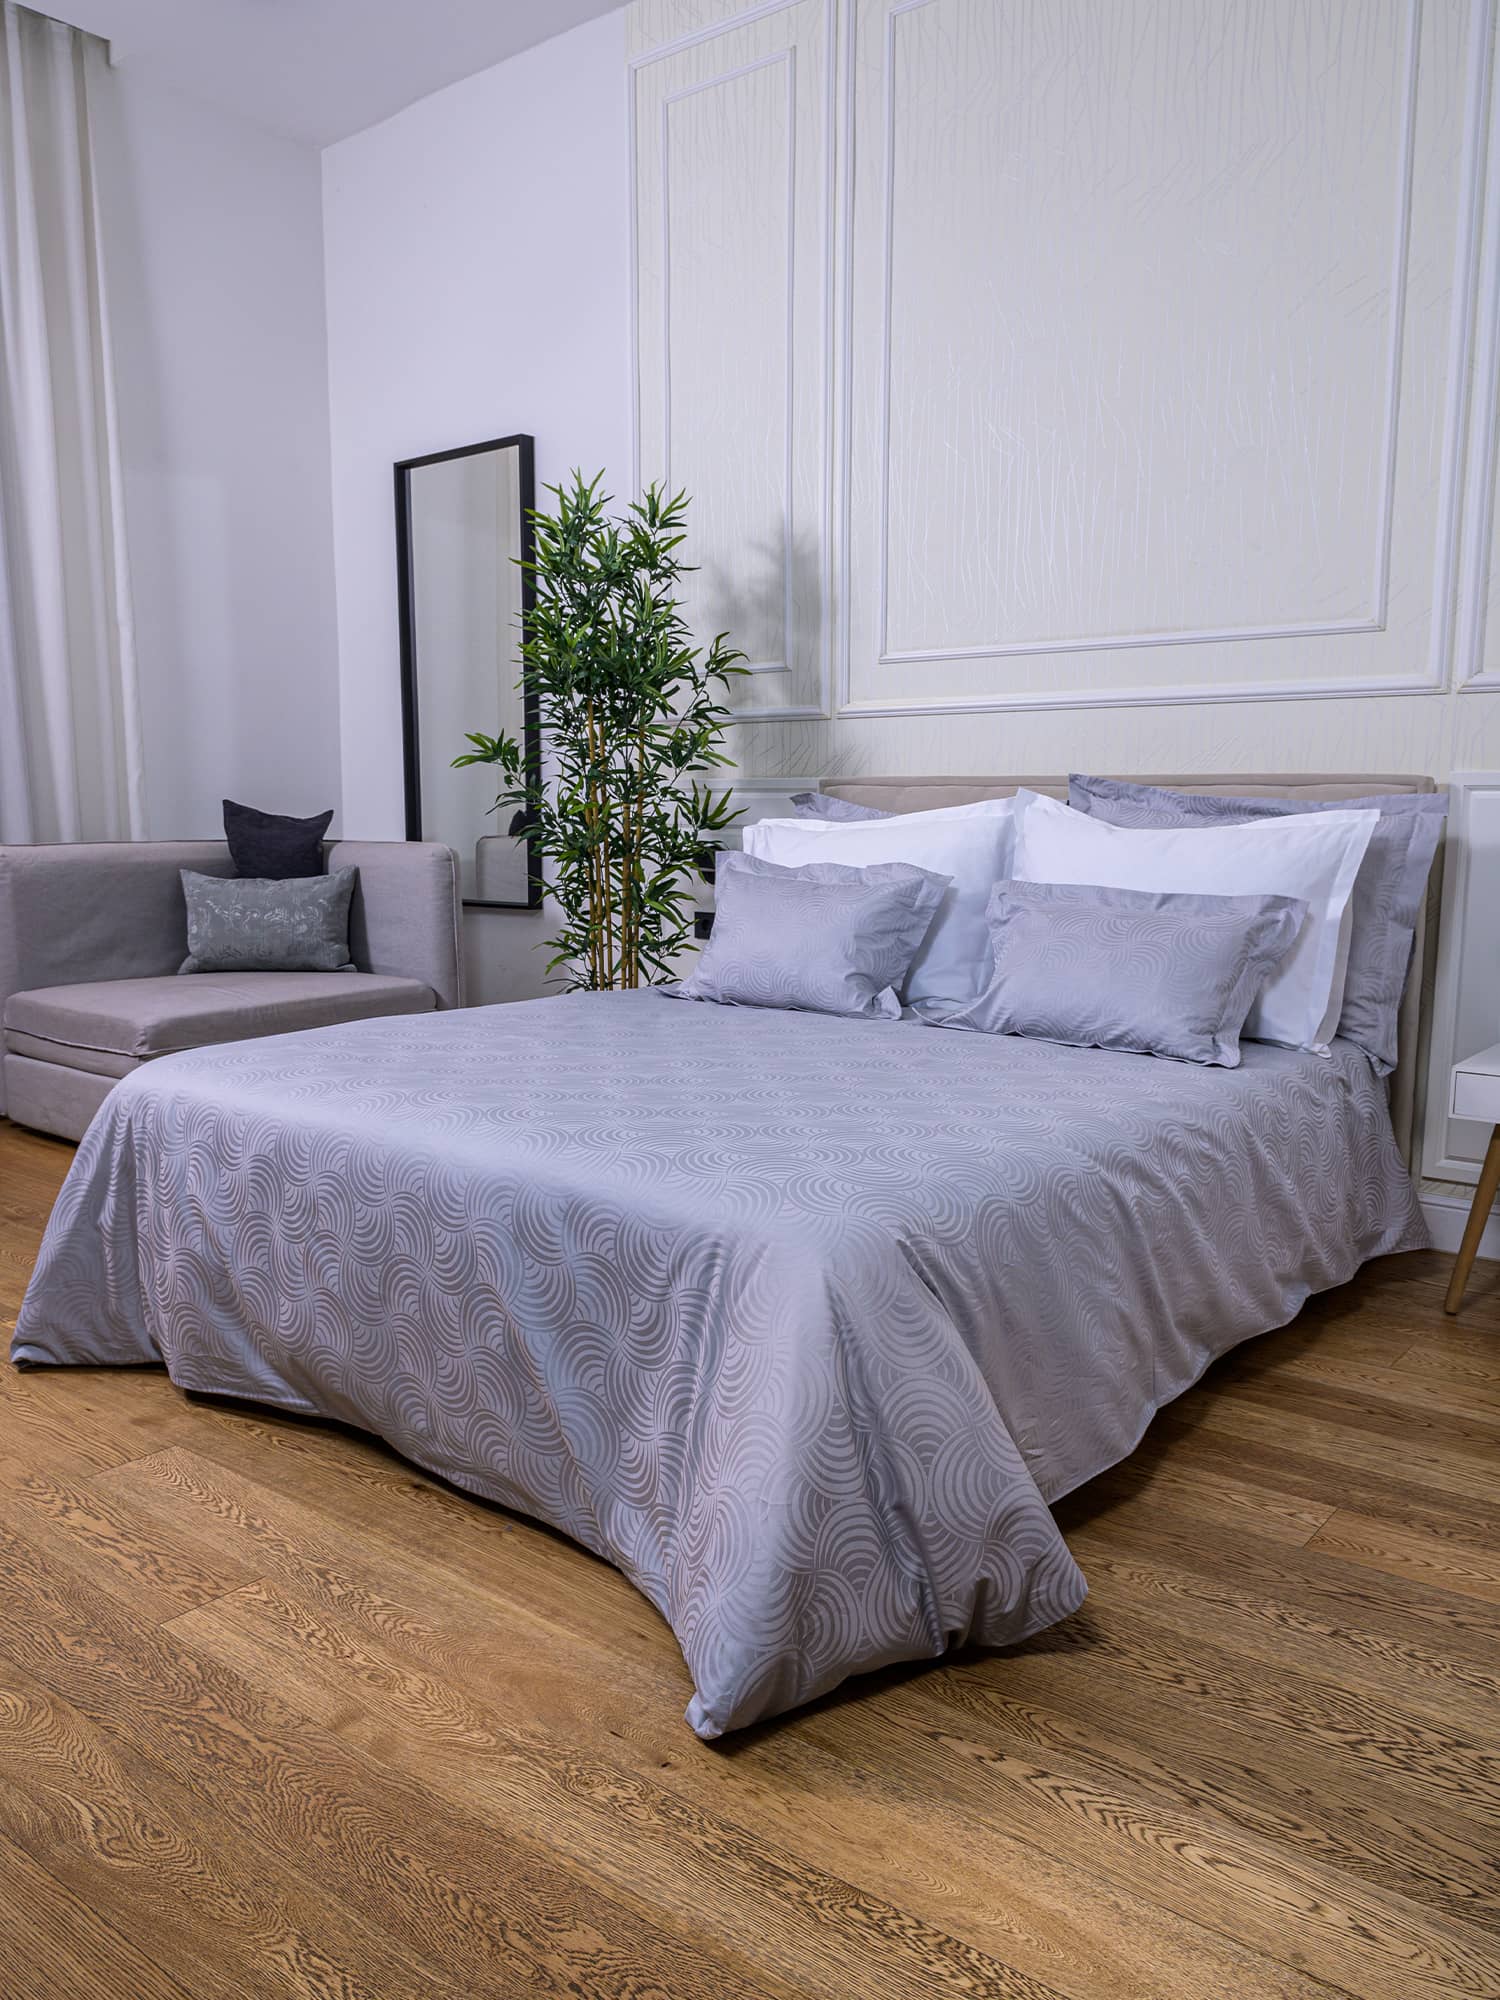 posteljina siva srebrna plahta navlaka jastučnica damast 100 posto pamuk 180x200